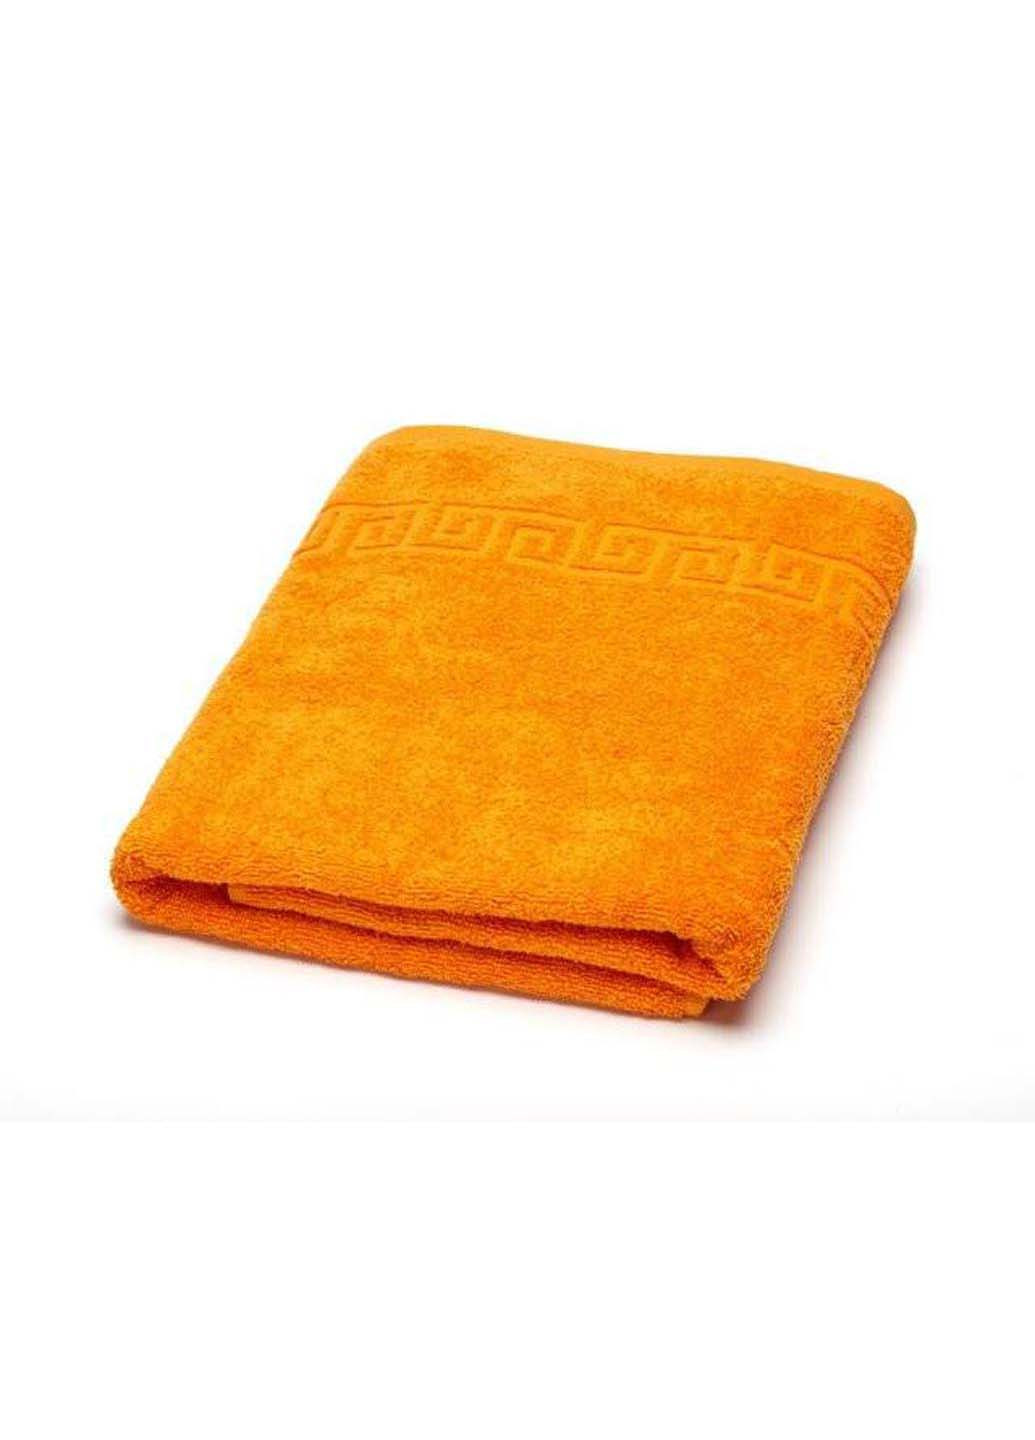 Ashgabat Dokma Toplumy махровое полотенце банное оранжевый производство - Туркменистан